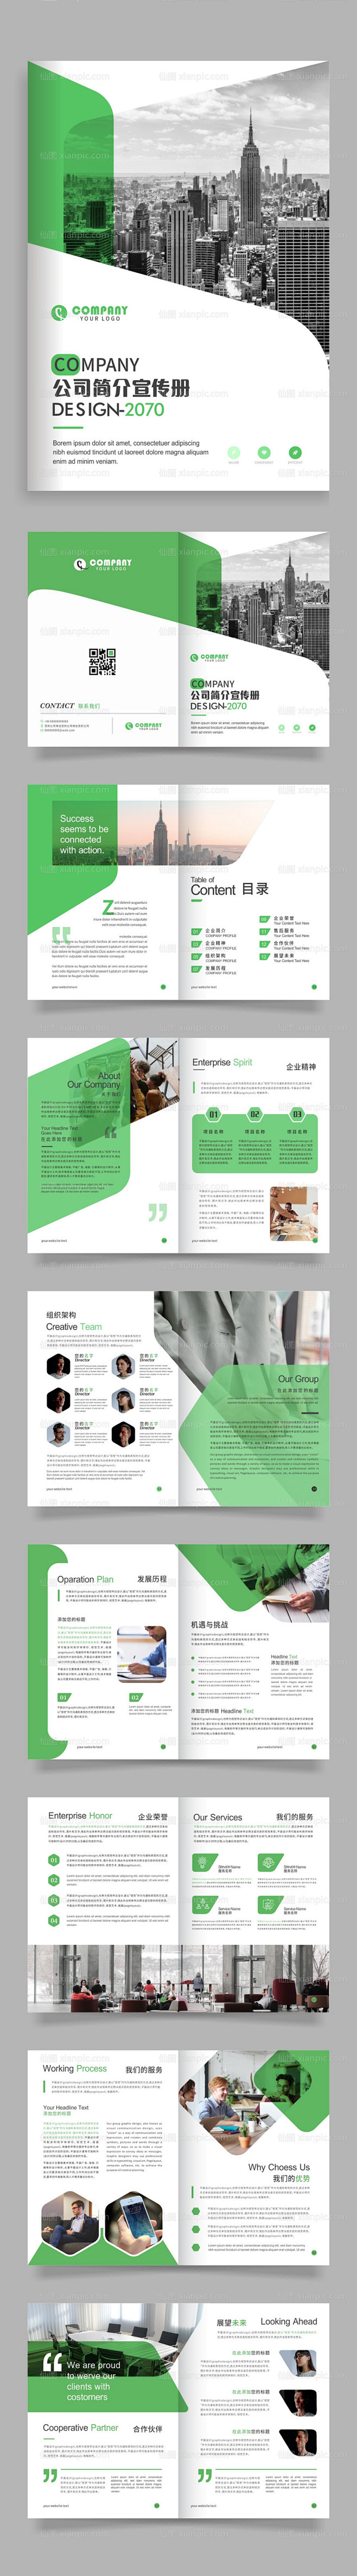 仙图网-绿色公司企业简介画册宣传册模板